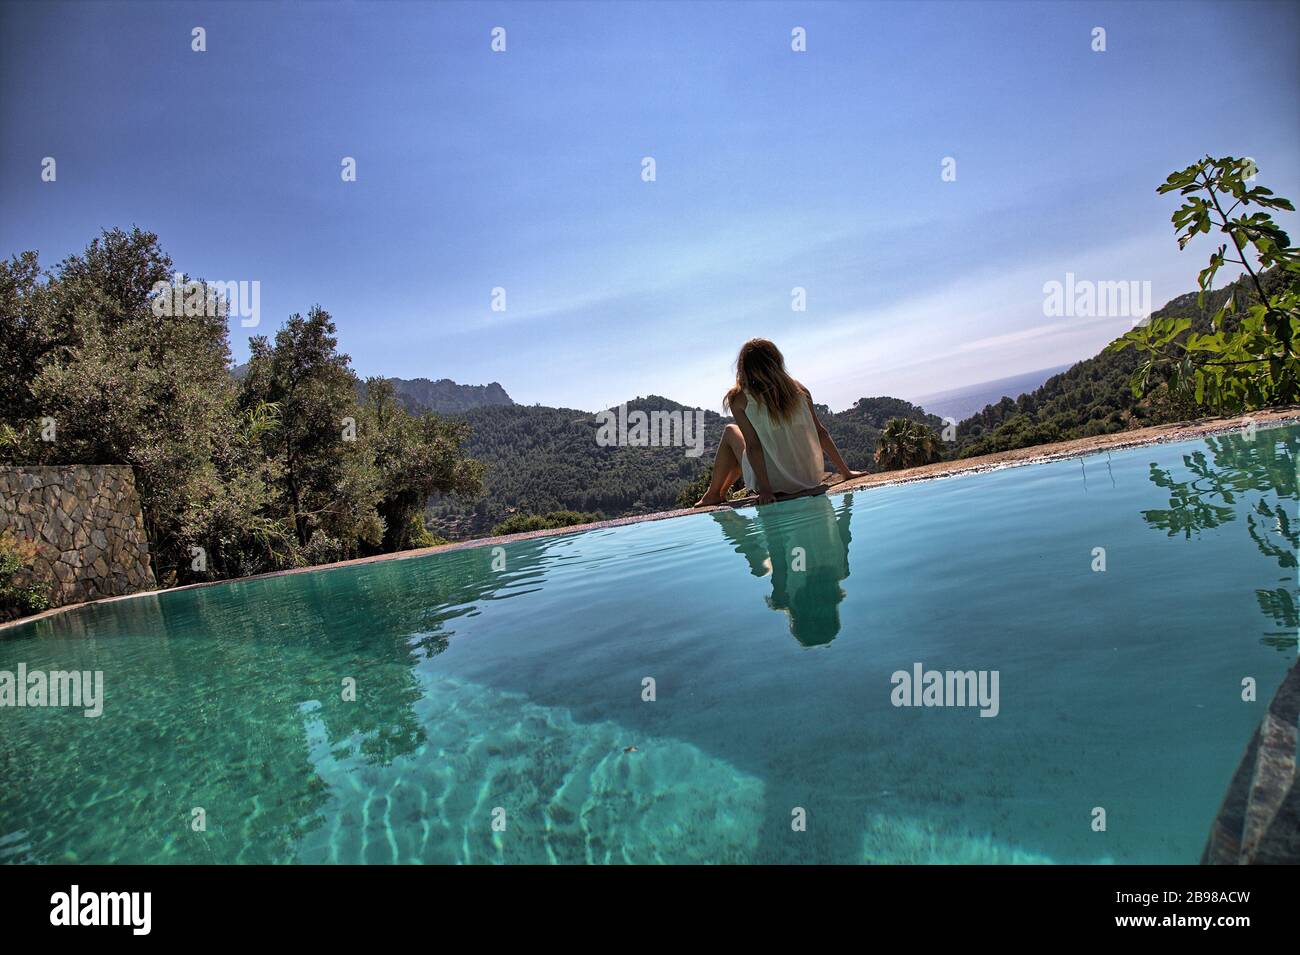 Star Valley, Estellencs, Mallorca, North Mallorca, The most beautiful views in Mallorca Stock Photo